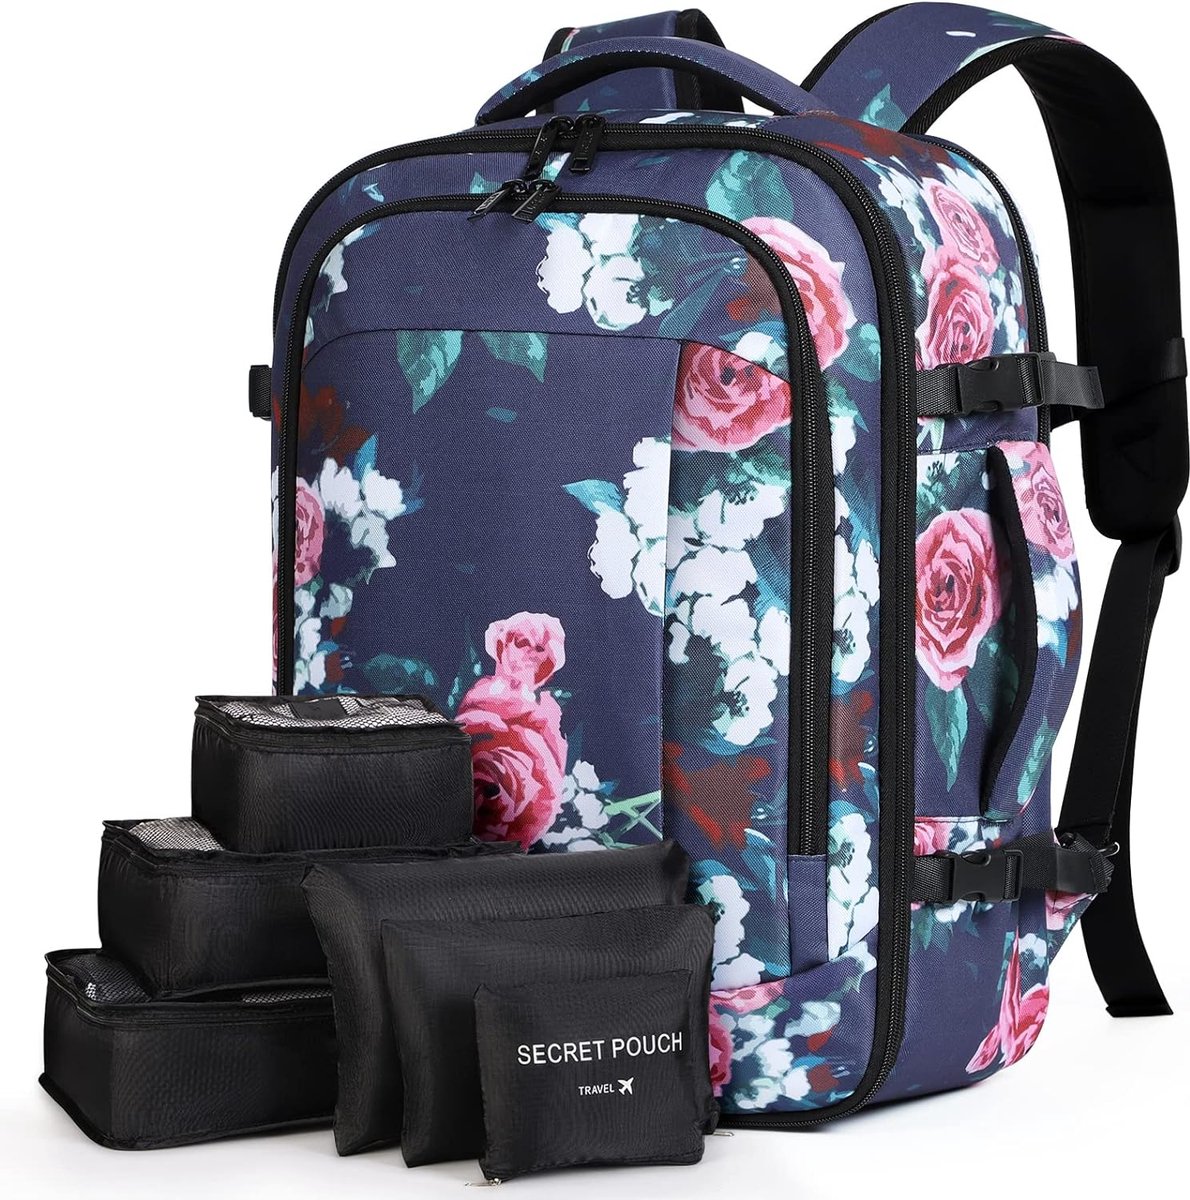 Grote rugzak voor heren en dames, 17 inch laptoprugzak, handbagage, rugzak, reisrugzak met 6-delige kledingtassen voor vakantie, business, werk, reizen, blauwe bloemen, Casual